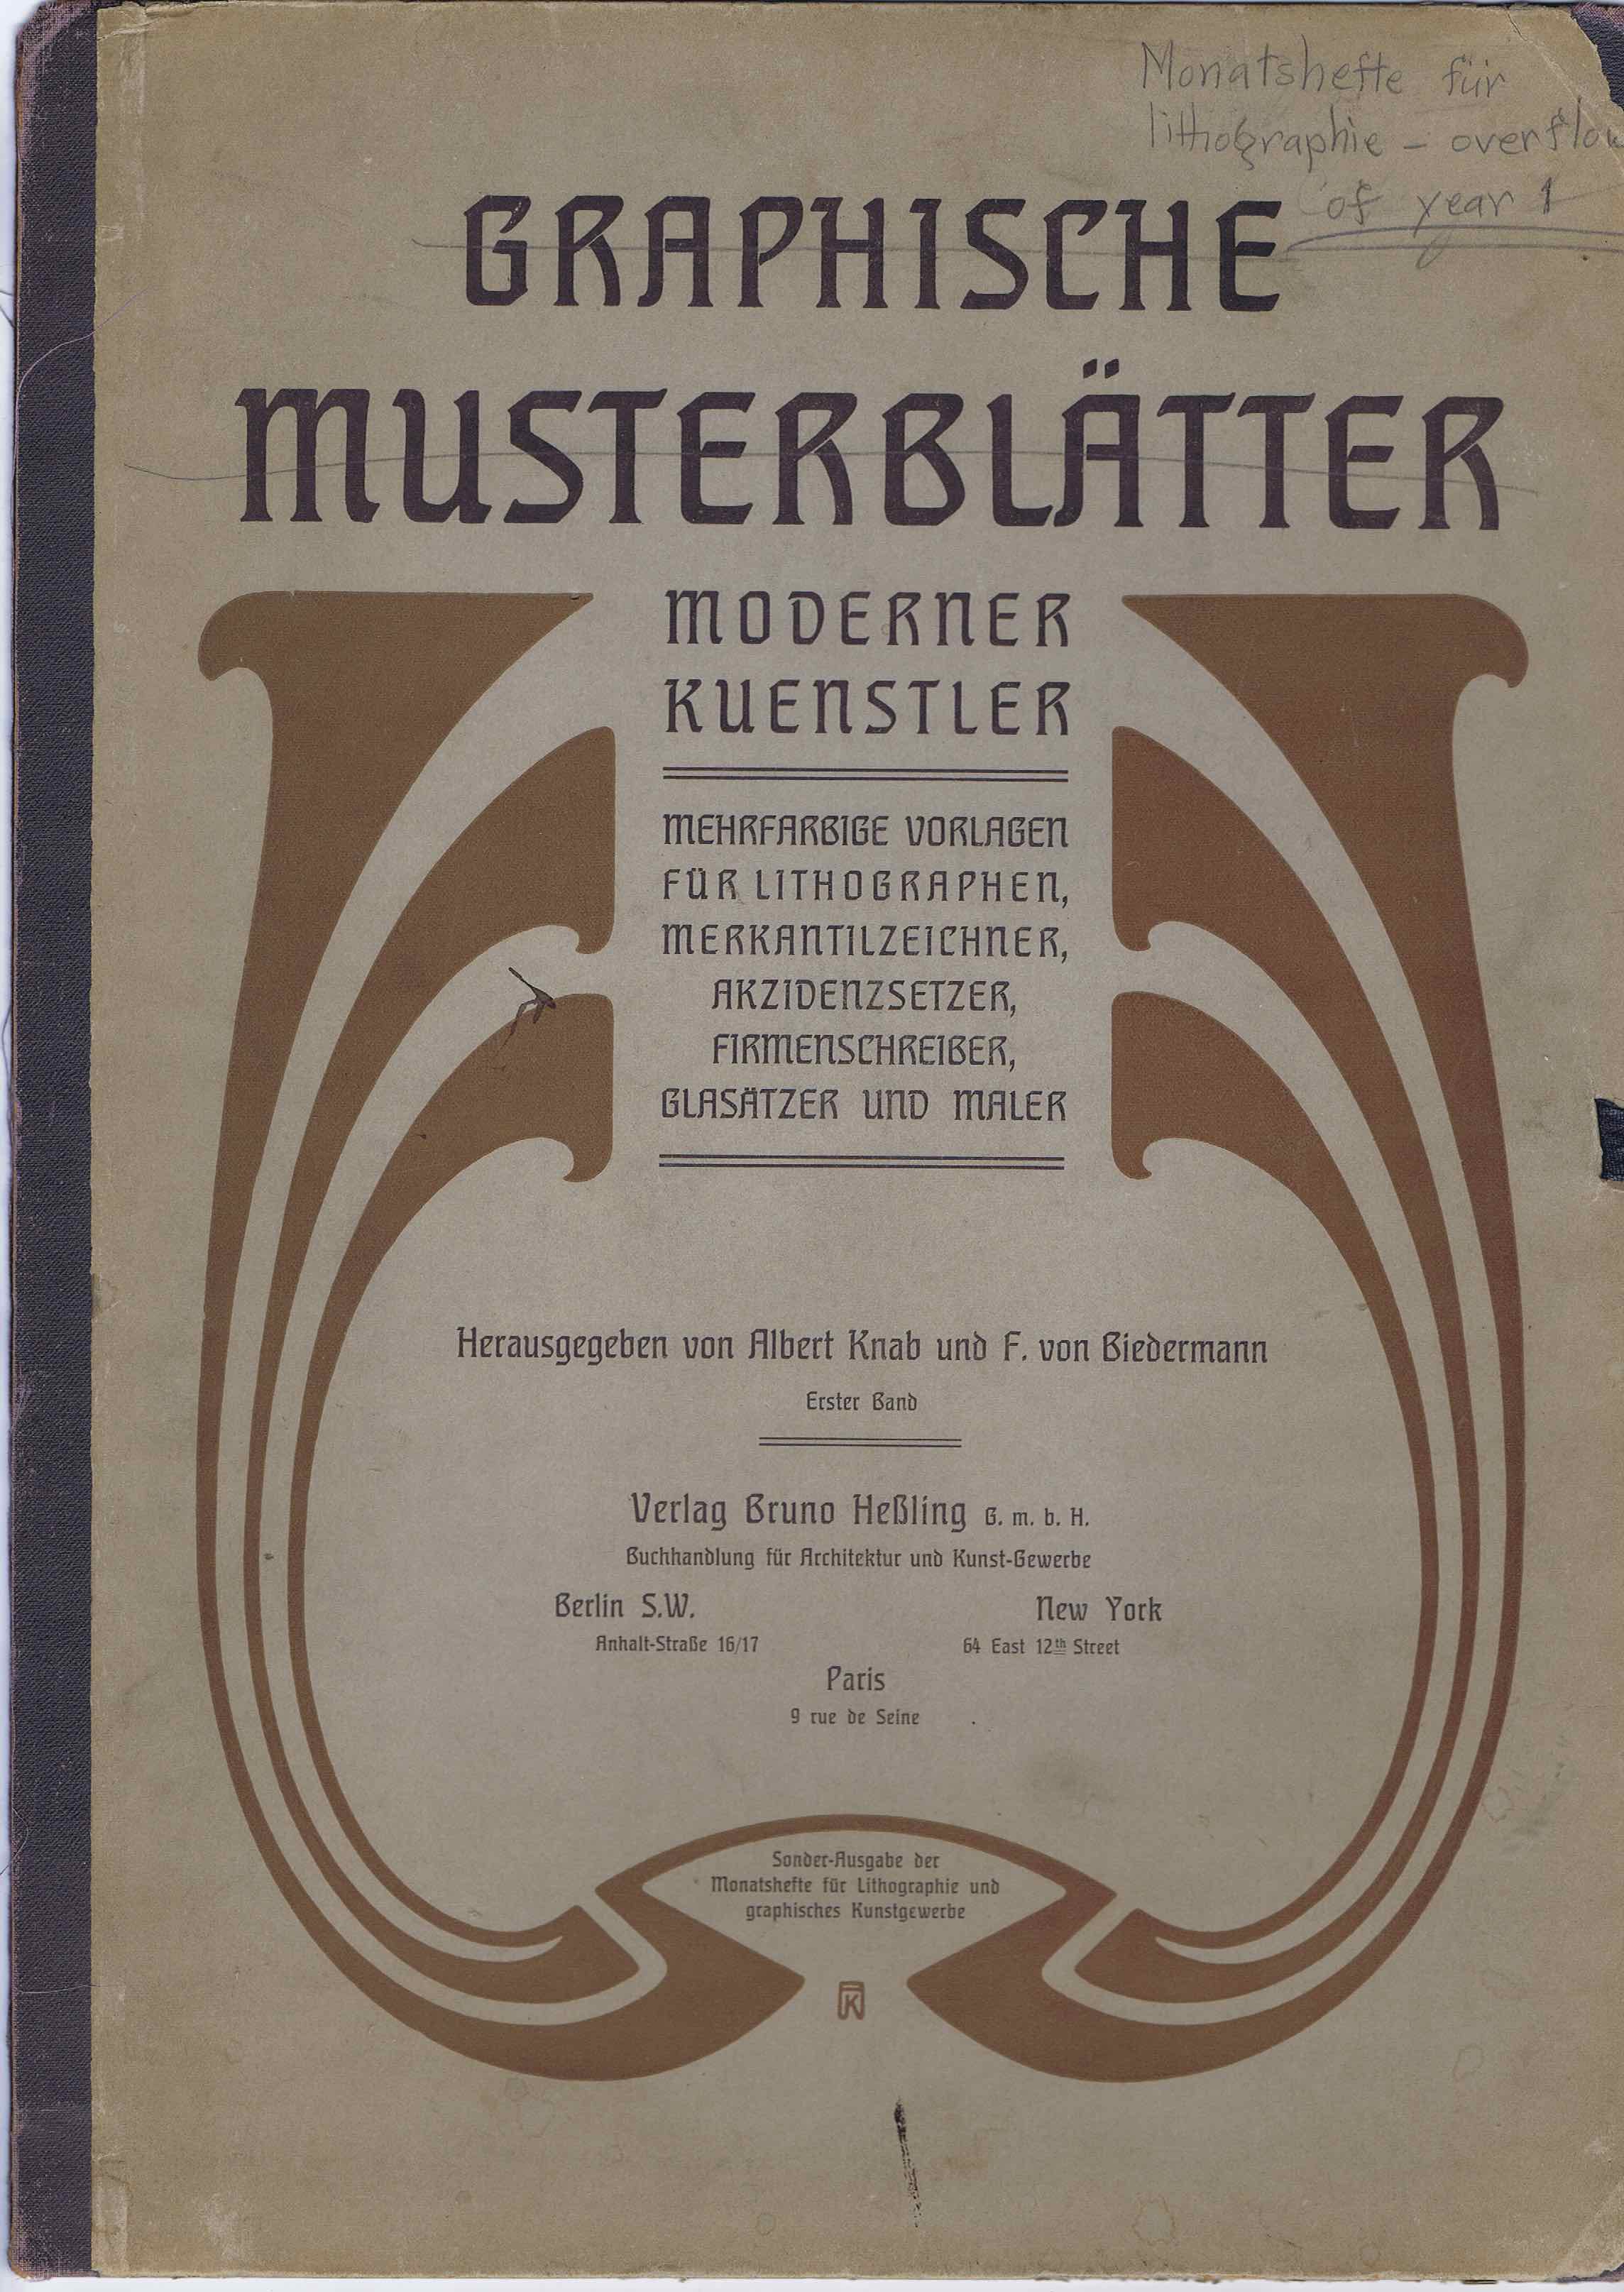 J340	GRAPHISCHE MUSTERBLATTER - MODERNER KUENSTLER